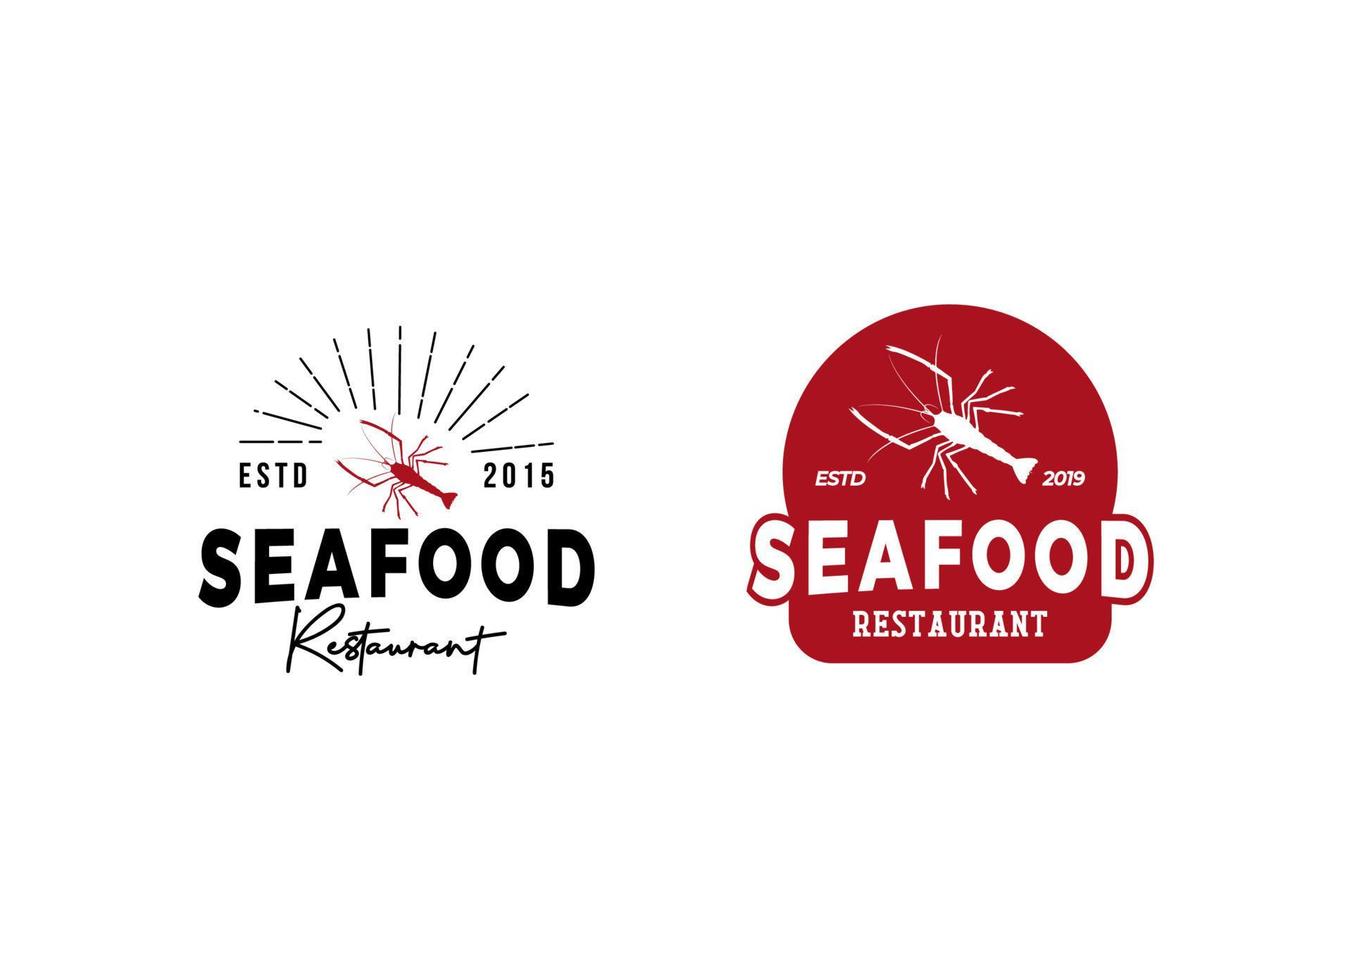 Logo-Design-Vorlage für Meeresfrüchte-Restaurants. vektor